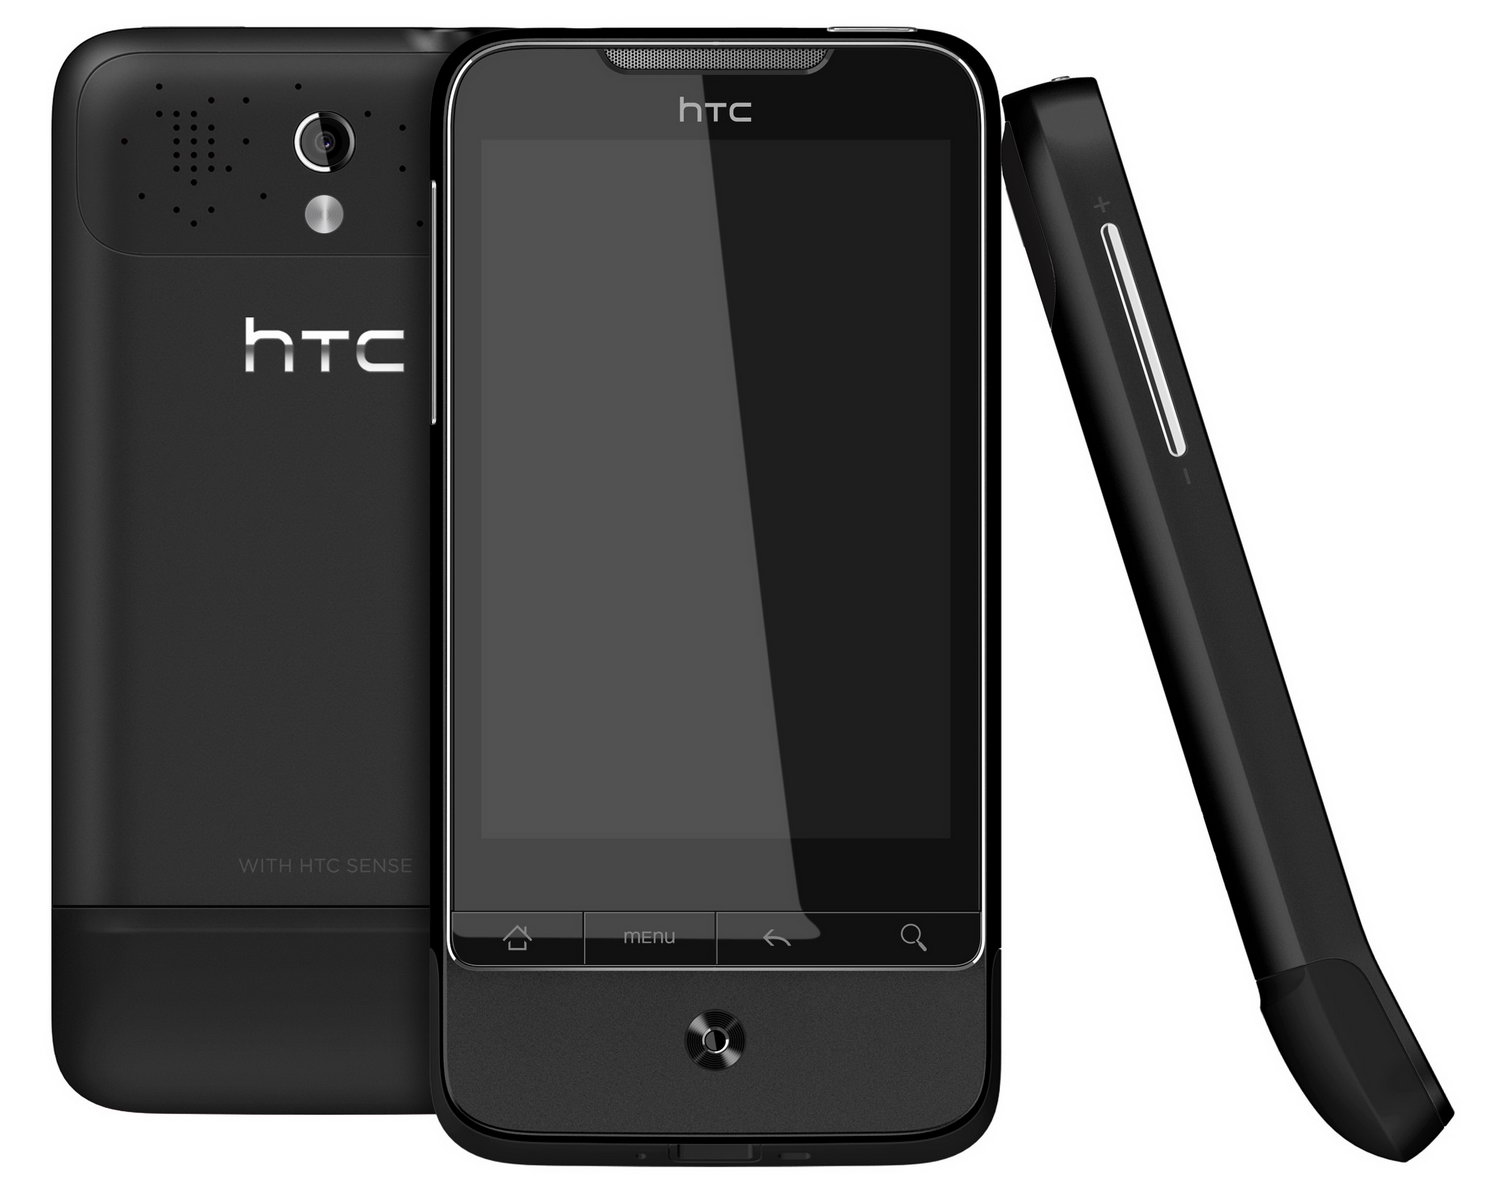 HTC a6363